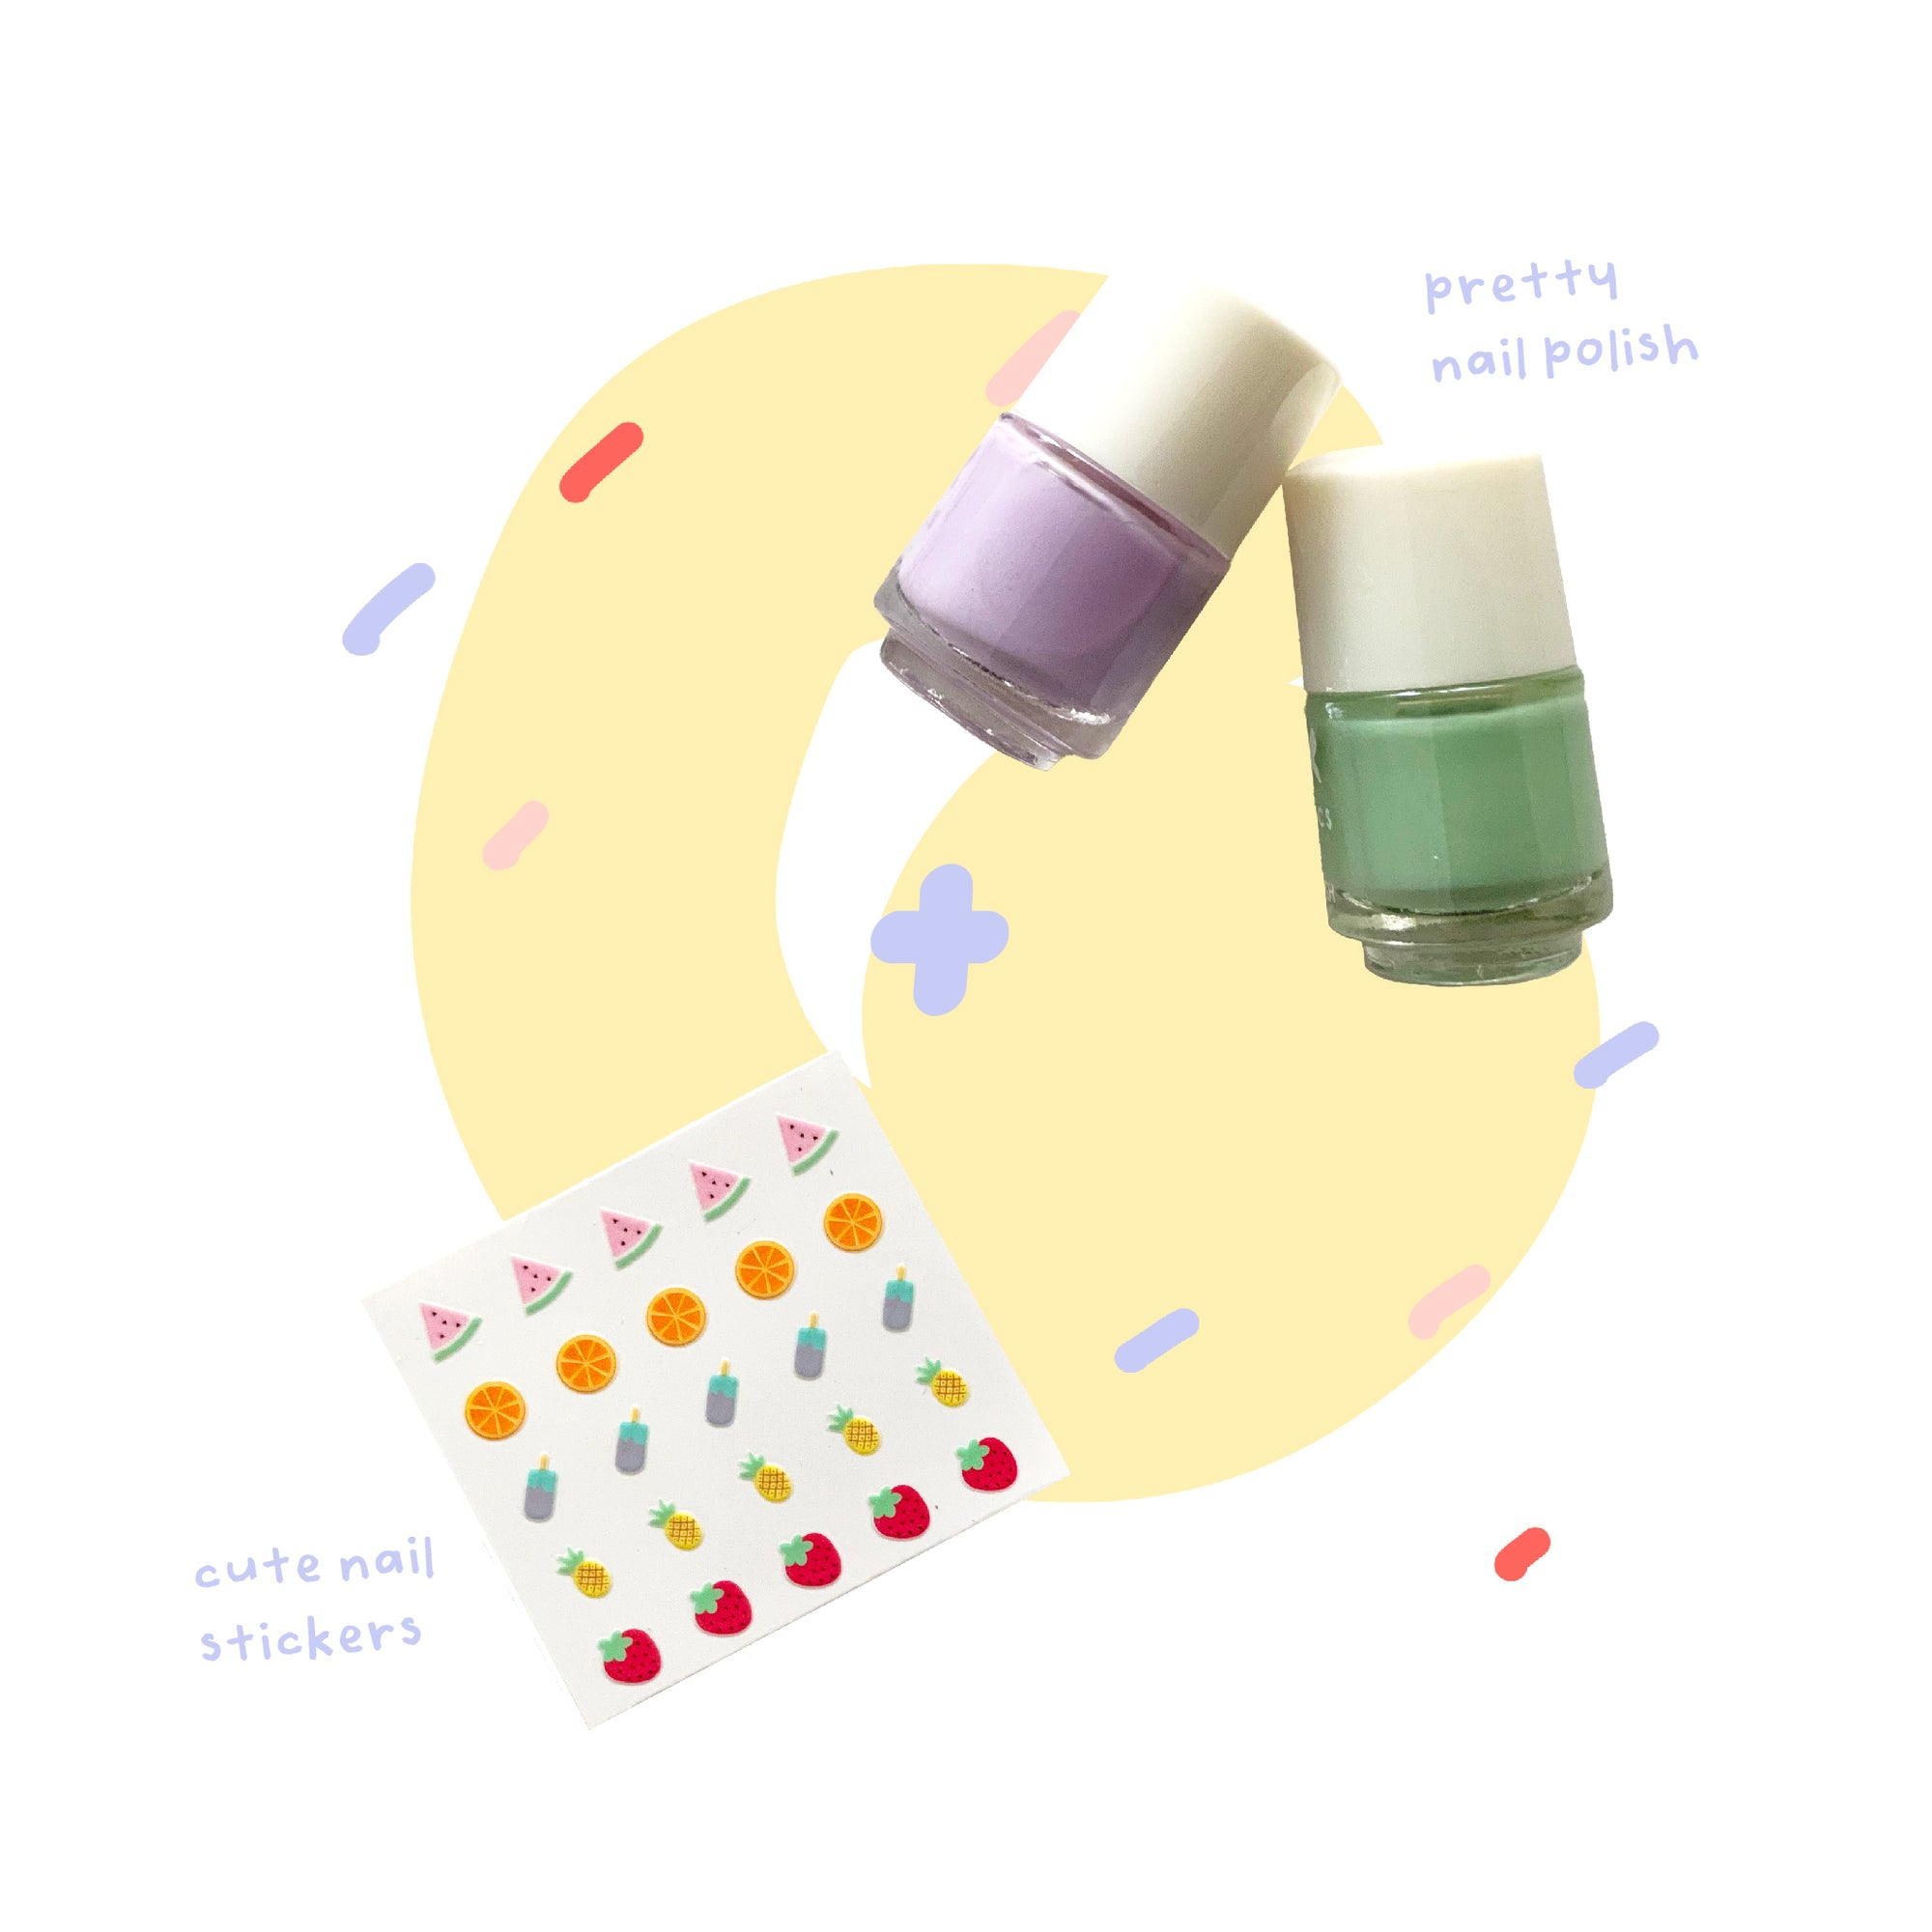 beauty kit - fruits nail sticker with powder pink and sage green nail polish